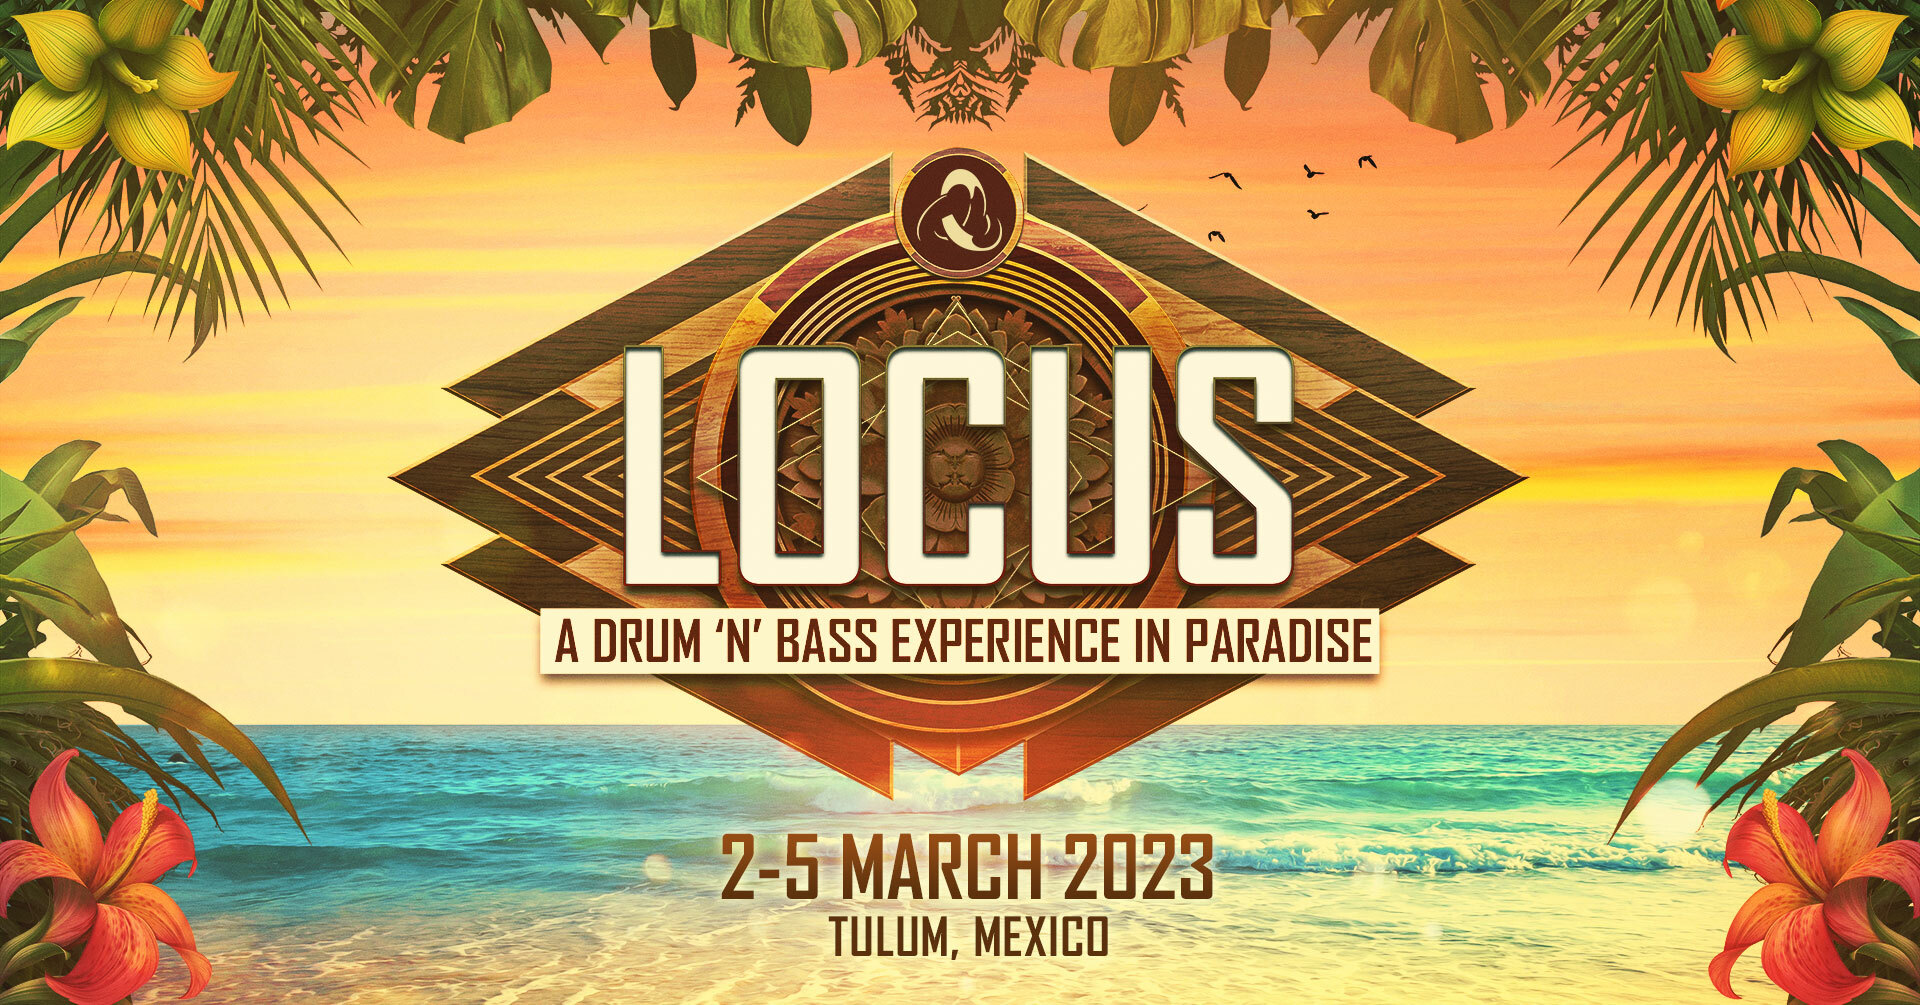 LOCUS Tulum 2023 - A Drum 'n' Bass Experience in Paradise, Tulum, Quintana Roo, Mexico